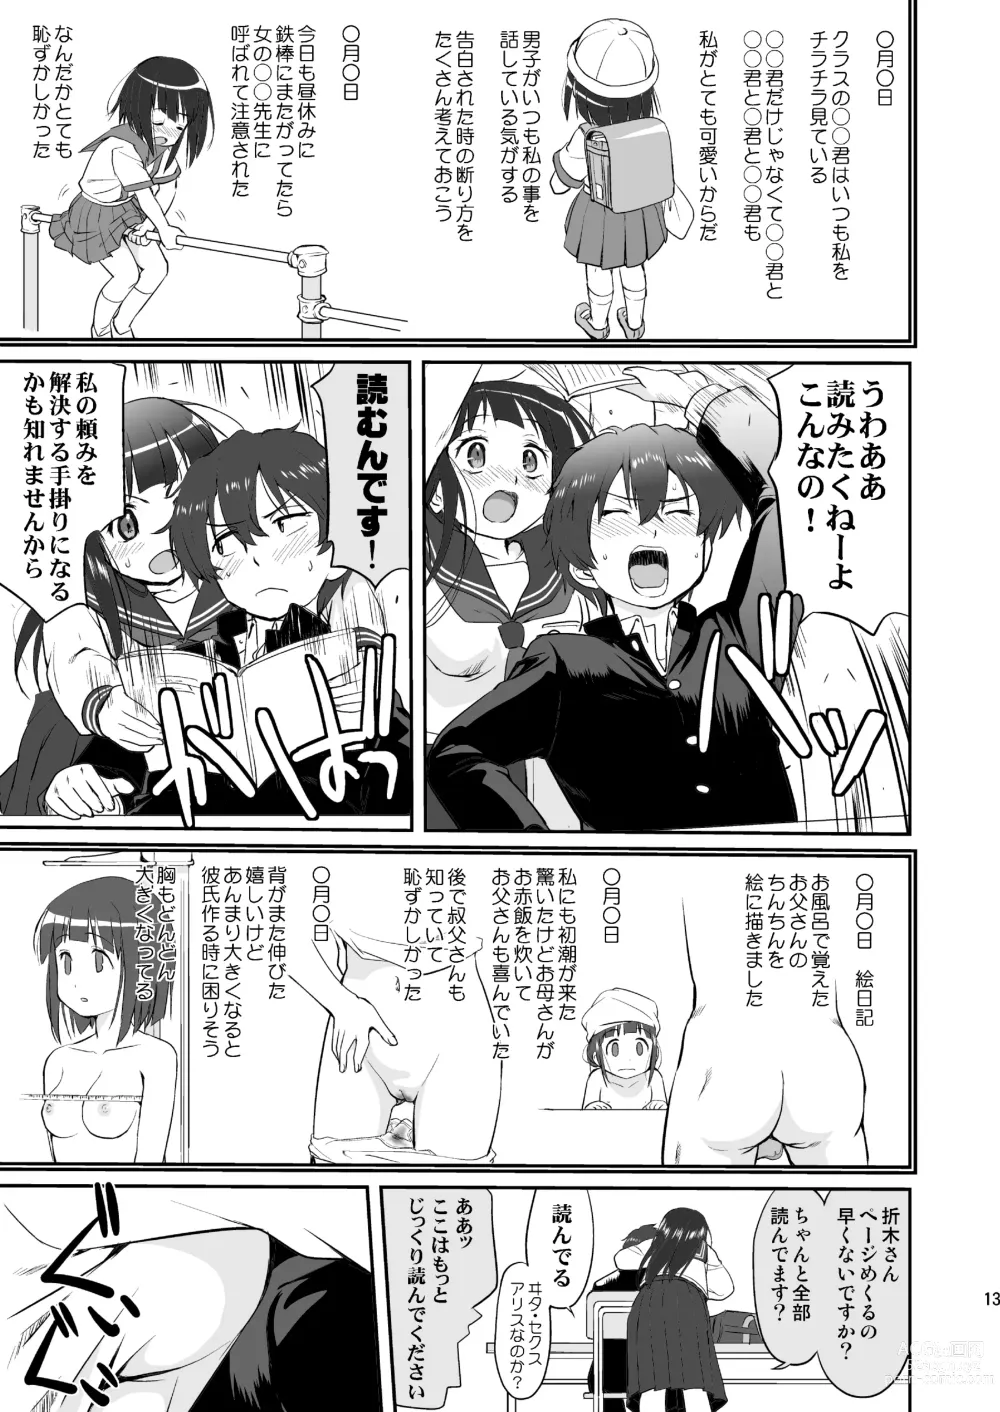 Page 13 of doujinshi Hikari no Ame